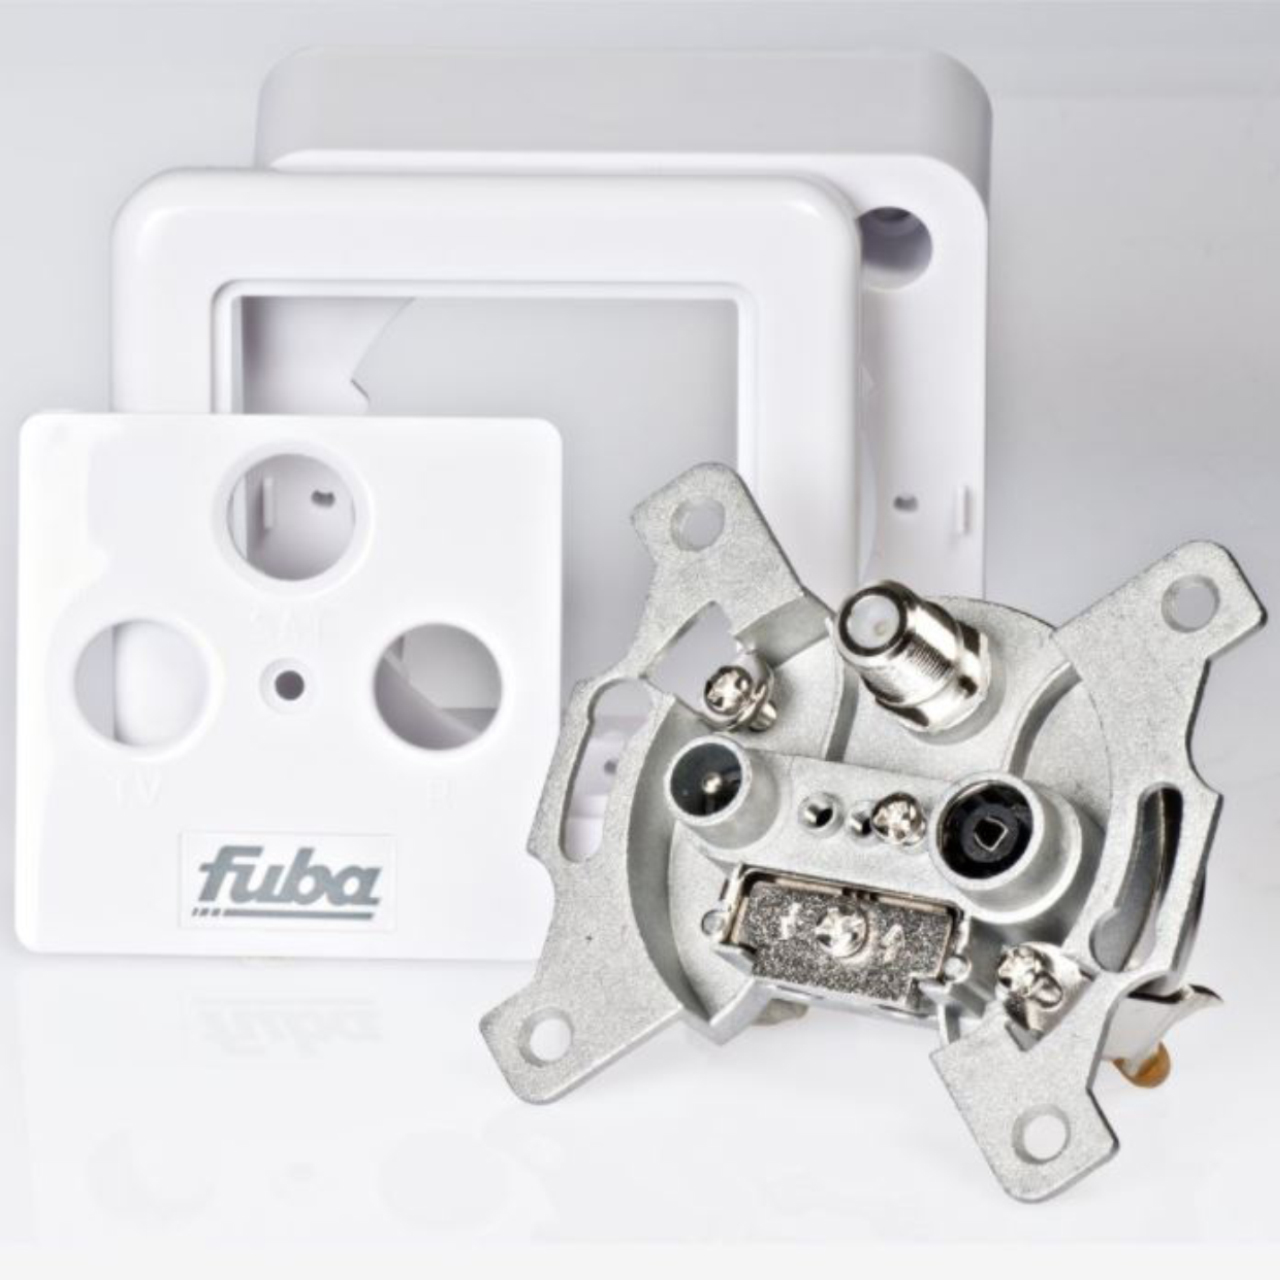 FUBA 6x 7,5mm 300 Sat-Dose F-Kompressionsstecker Antennendose GAD XCon Enddose S8 3-Fach